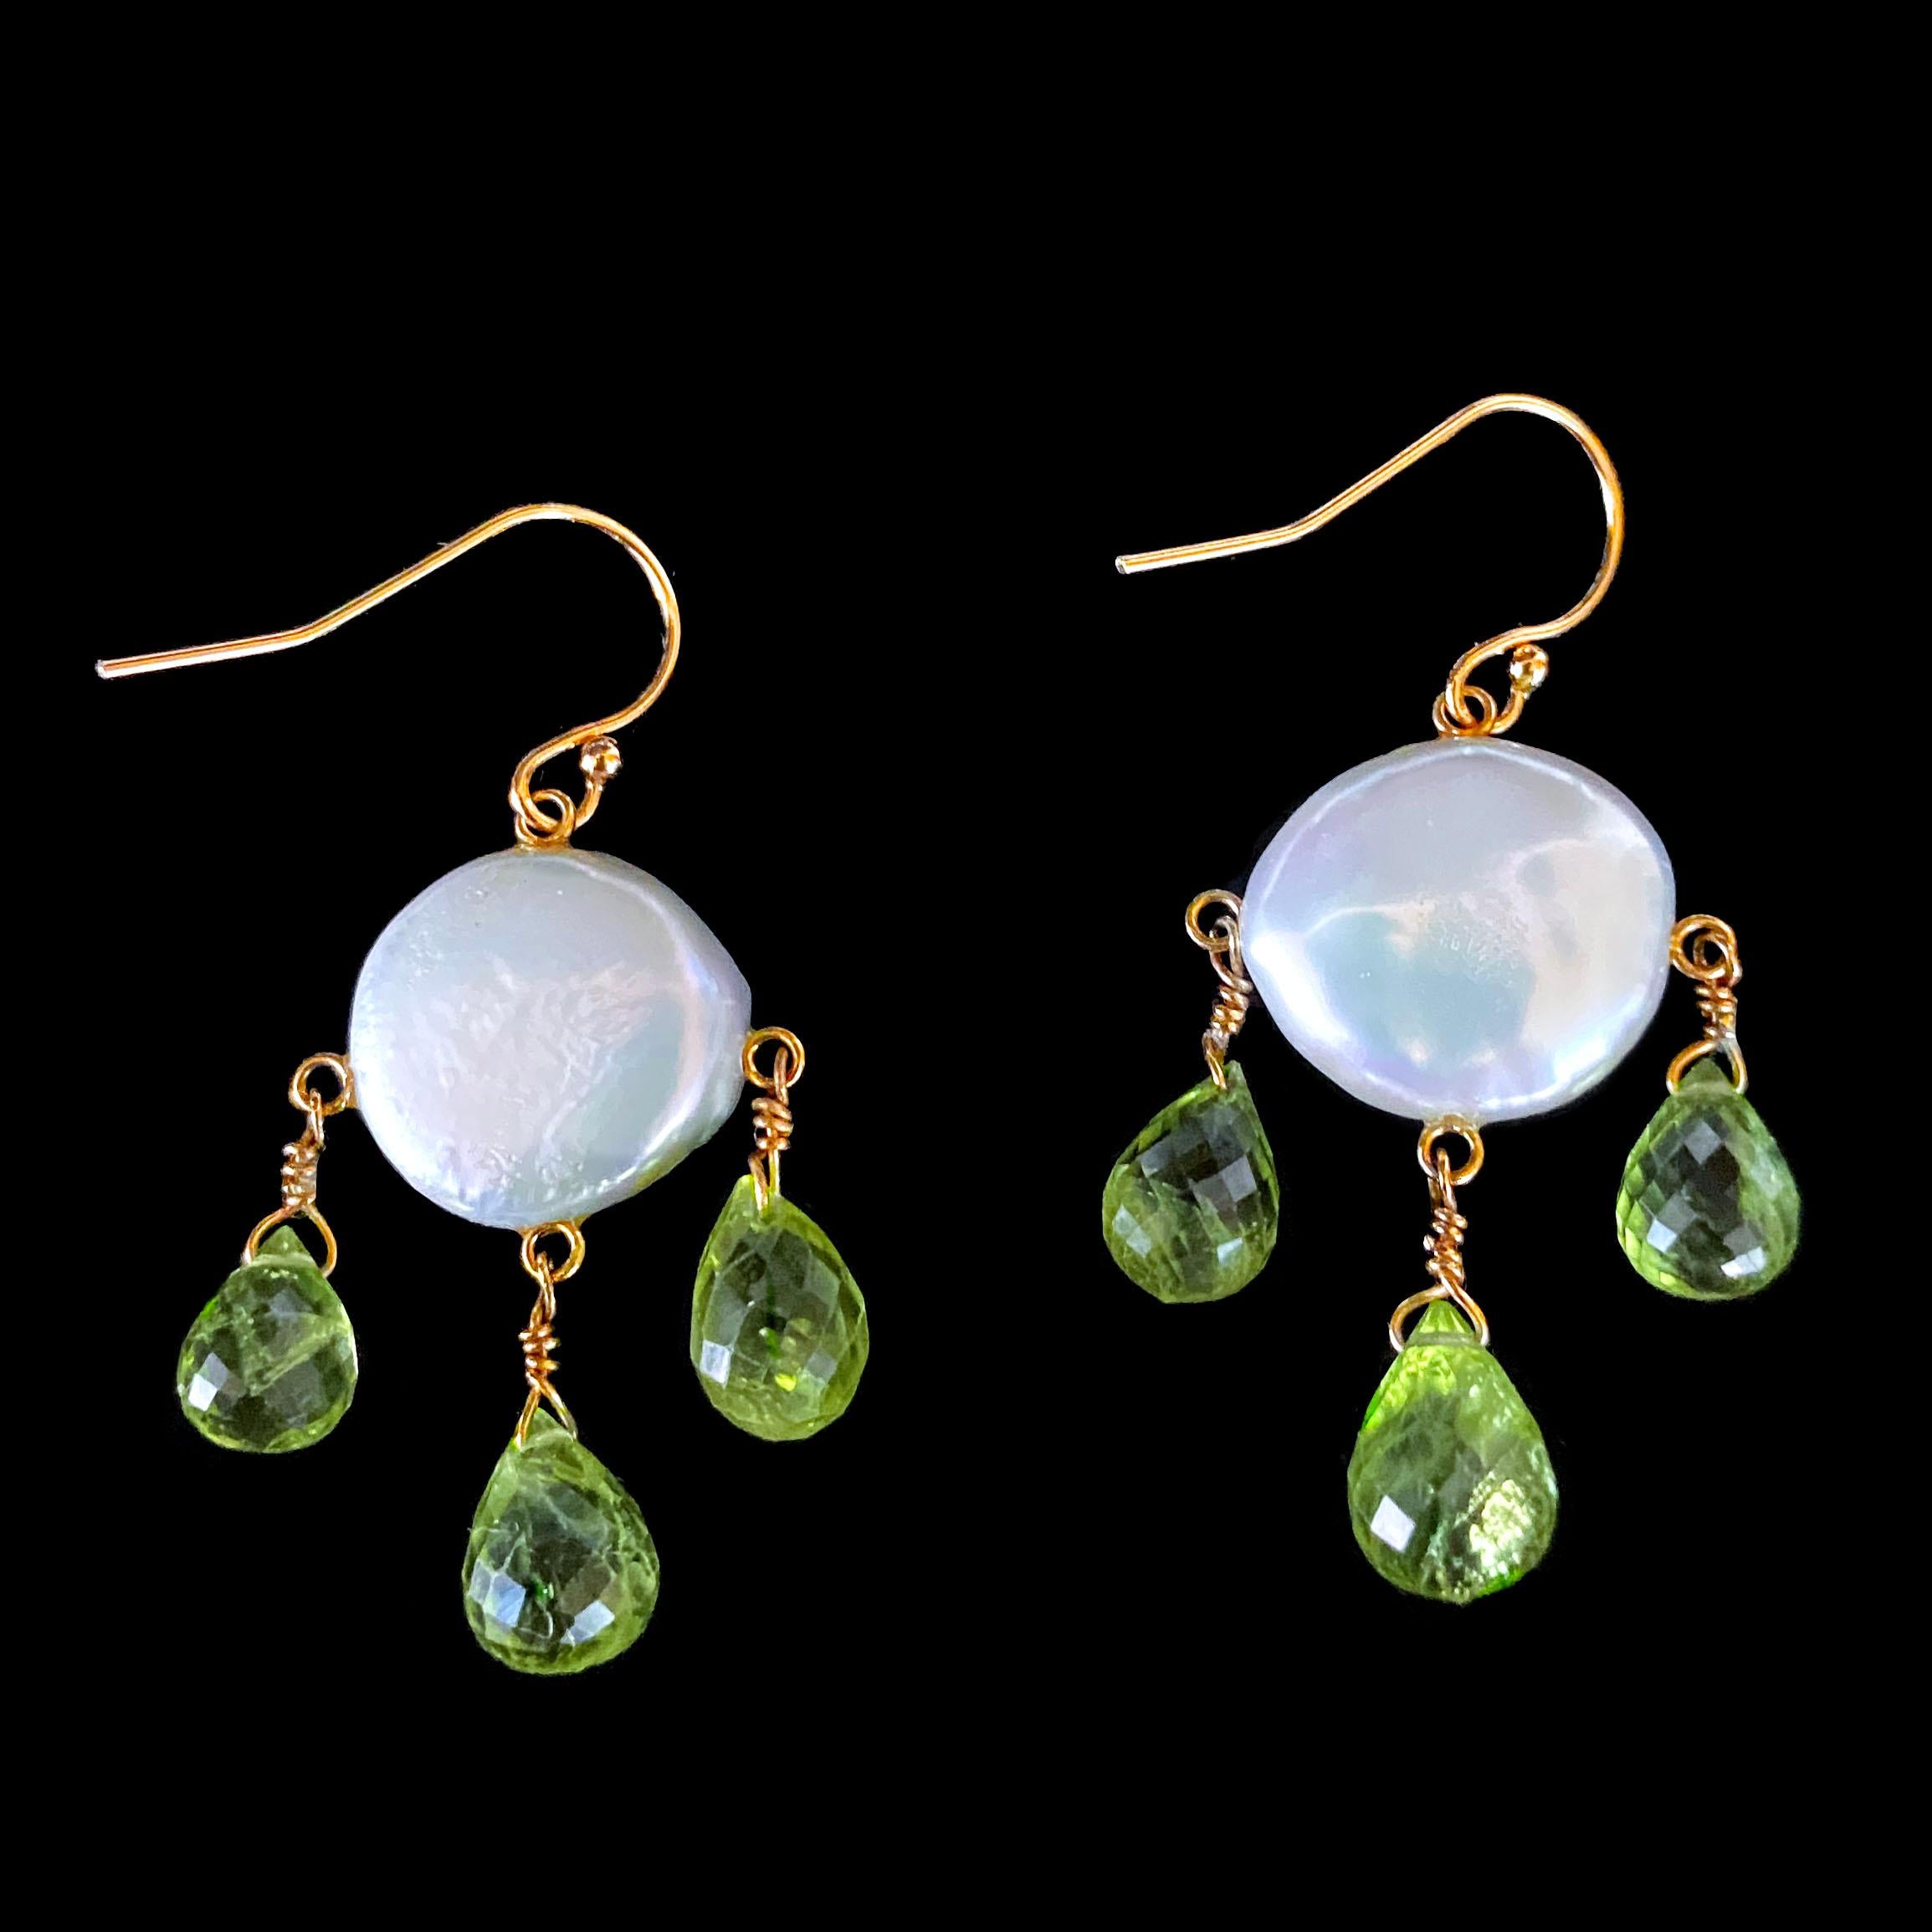 Paire de boucles d'oreilles ludiques de Marina J. Ces boucles d'oreilles sont composées de deux magnifiques perles plates de couleur irisée. Trois péridots facettés en forme de goutte d'eau sont suspendus à la perle à la manière d'un chandelier.